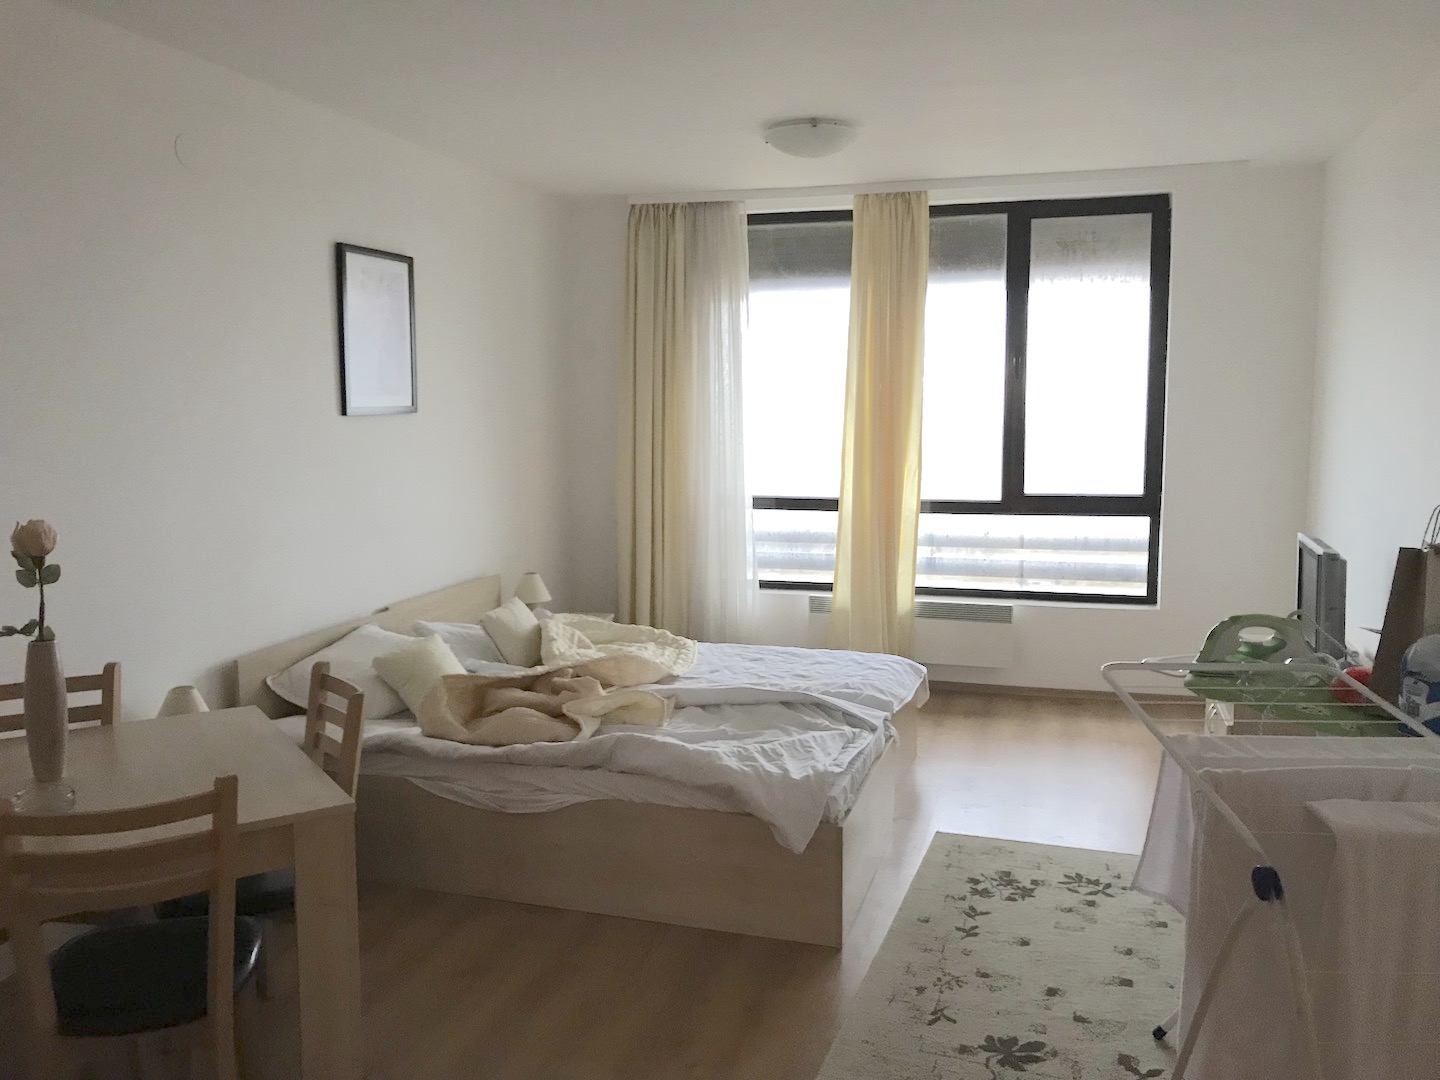 44,34sq.m studio apartment for sale in Bulgaria